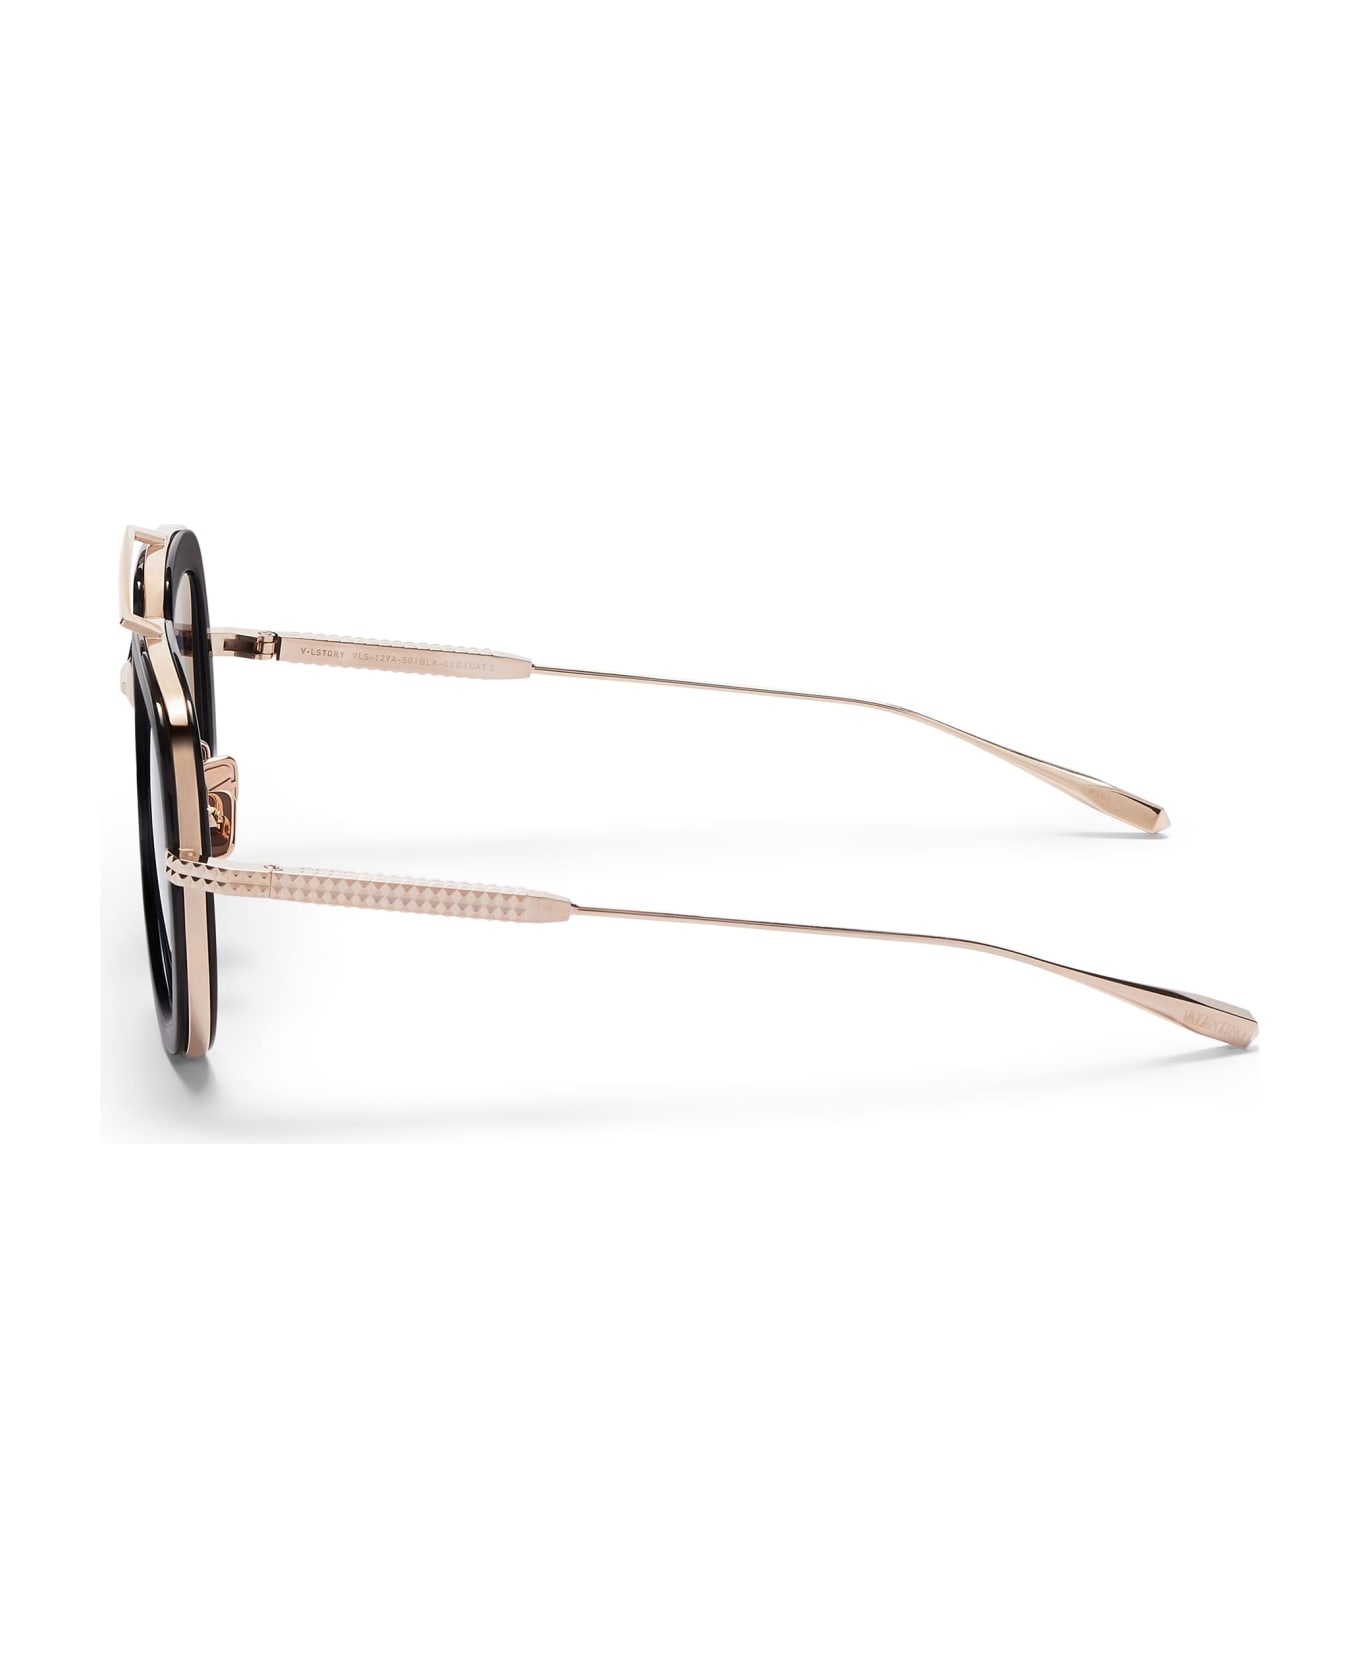 Valentino Eyewear V-lstory - Black / White Gold Sunglasses - white gold サングラス